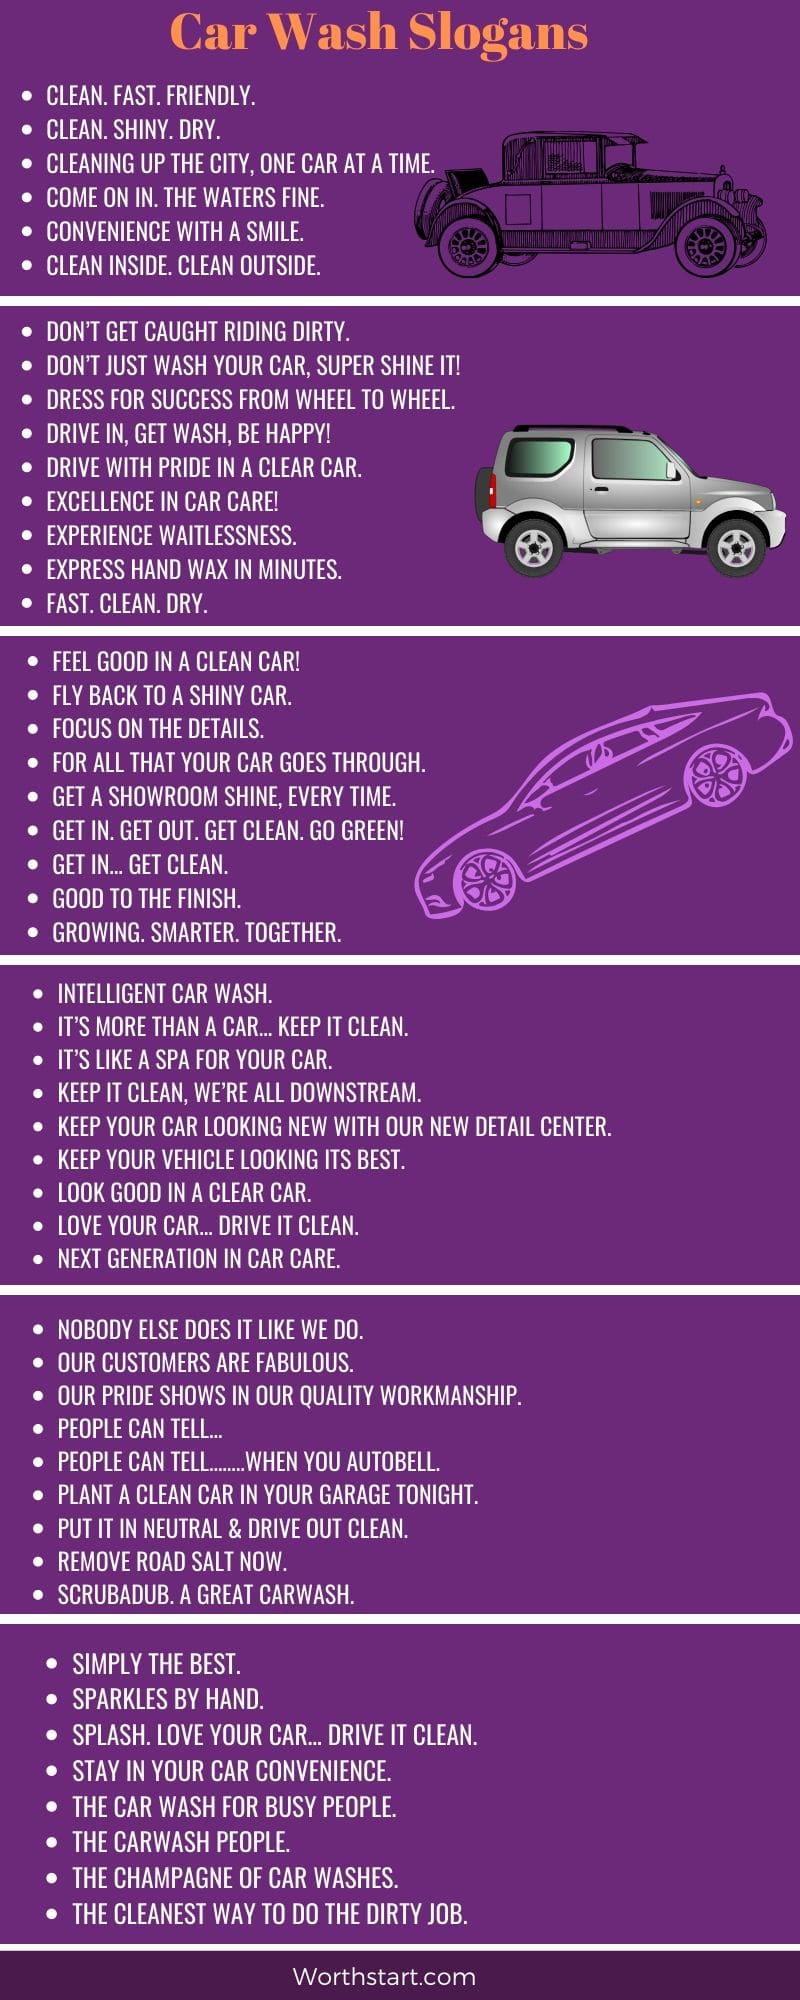 Car Wash Slogans